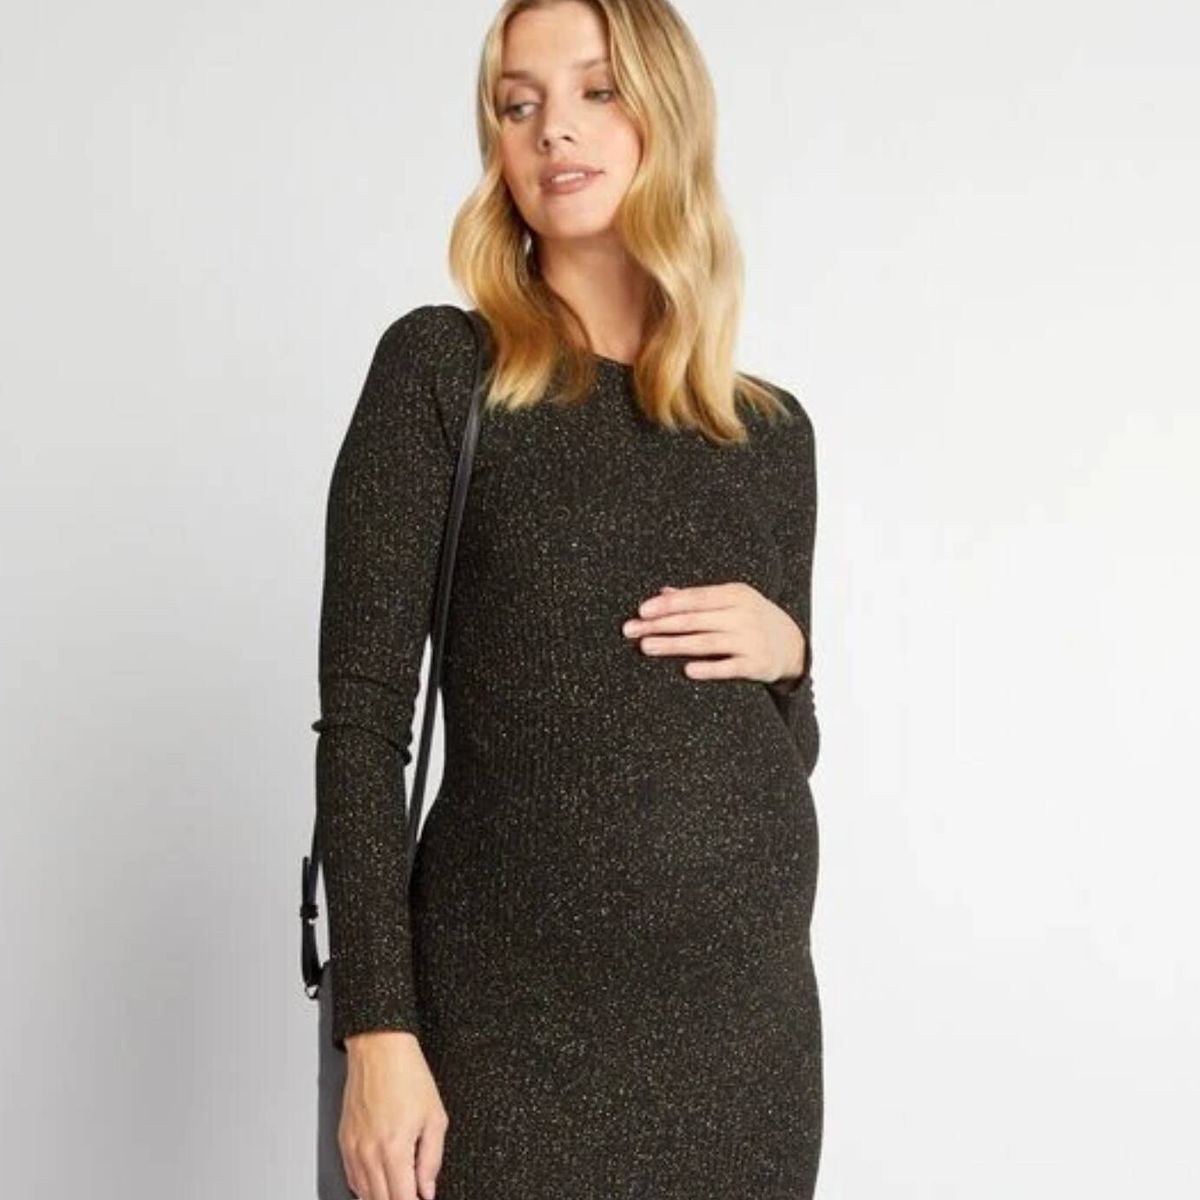 10 ideas de Outfit embarazada  moda de maternidad, ropa de embarazo, moda  embarazada